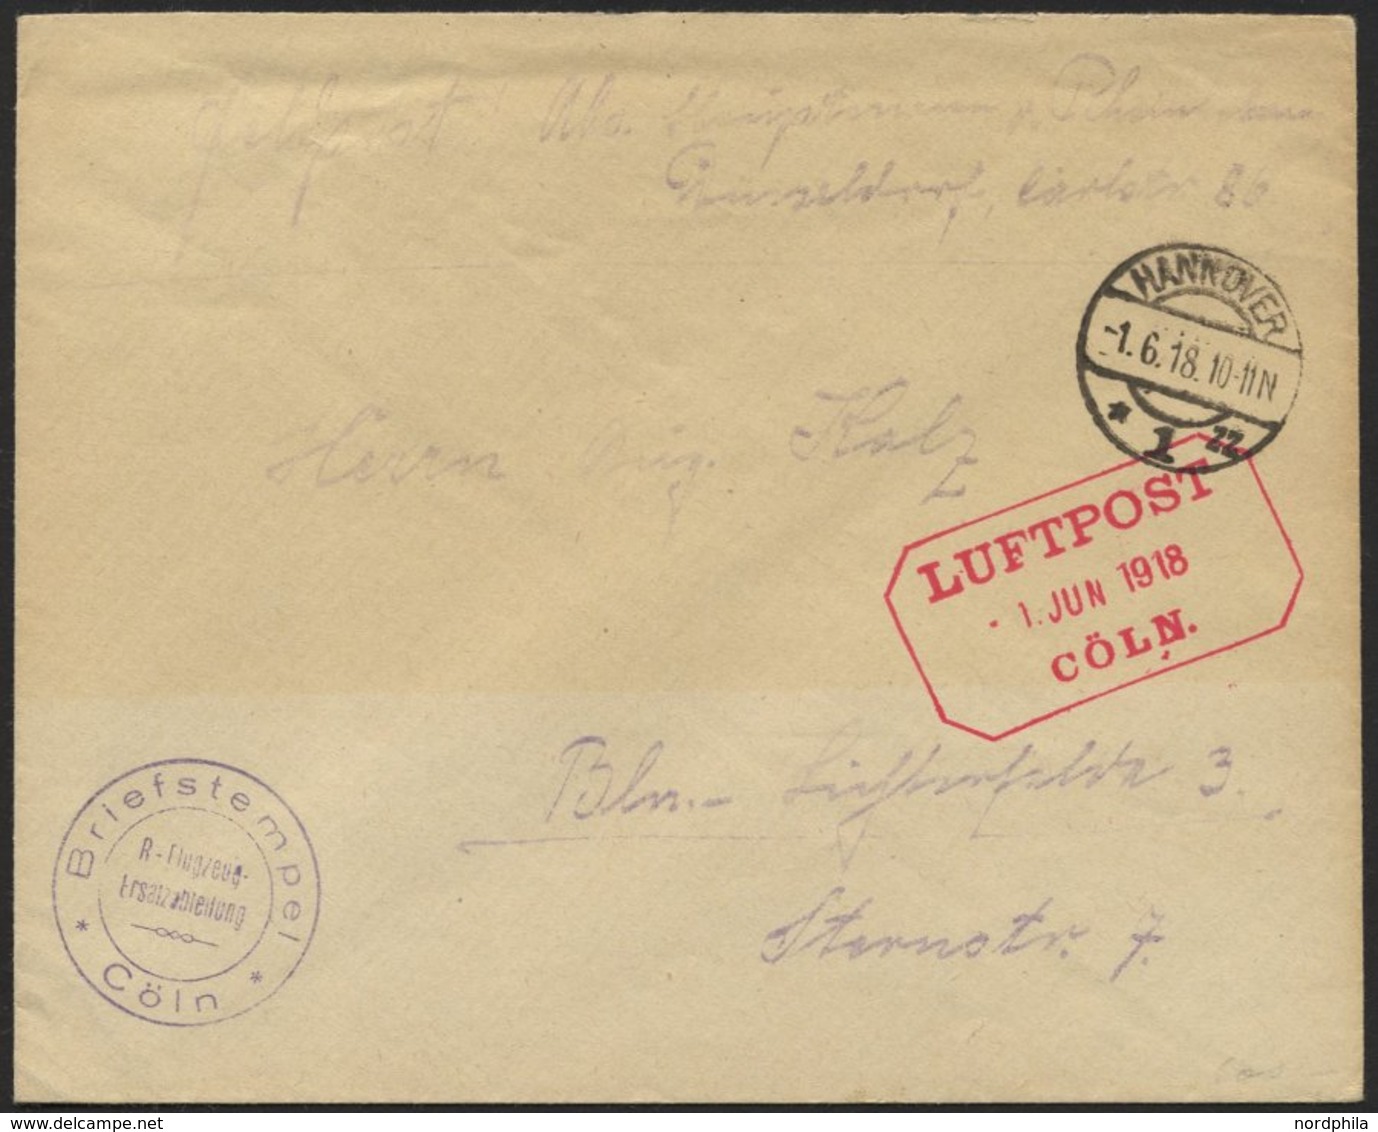 LUFTFAHRT IM I. WELTKRIEG 1918, LUFTPOST - 1. JUN 1918 CÖLN, Roter R3 Auf Feldpostbrief Mit Briefstempel R-Flugzeug Ersa - Aerei